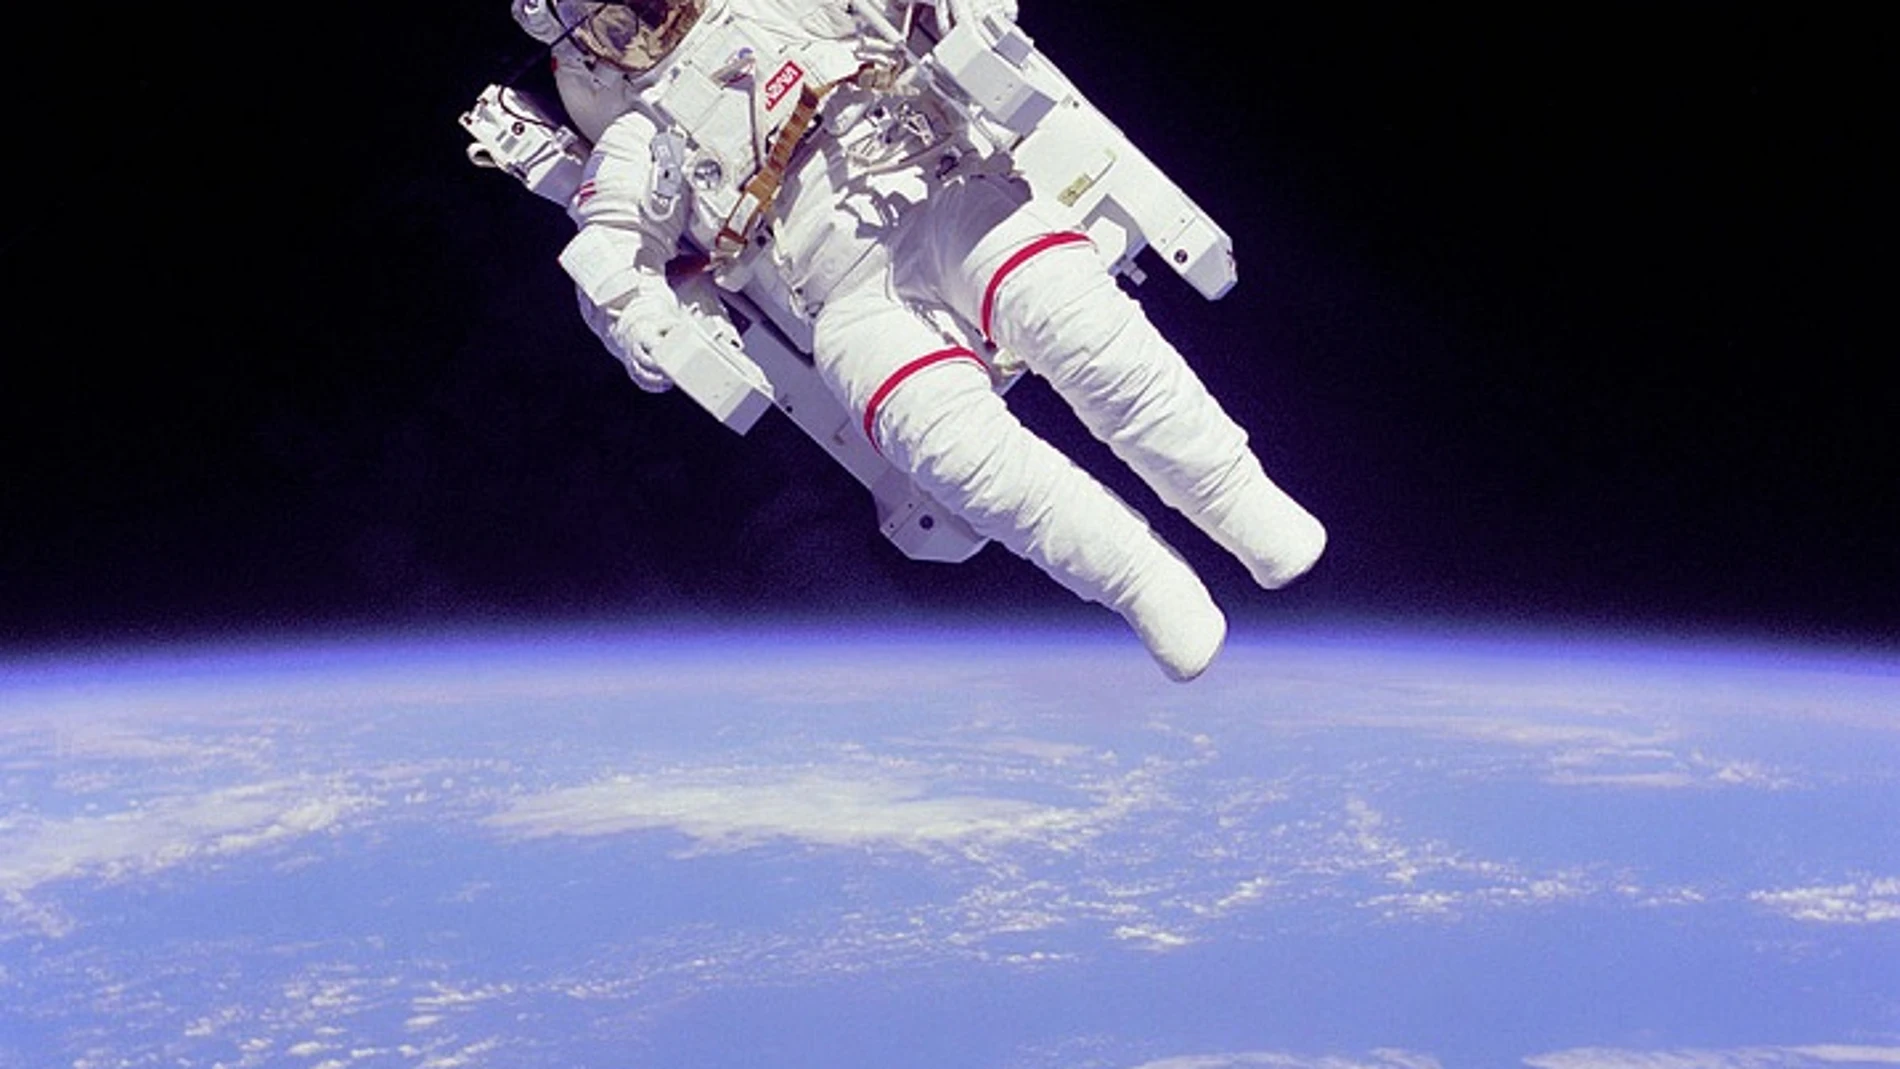 Bruce McCandless II con un traje espacial para misiones extravehiculares en su configuración más avanzada, 1984.